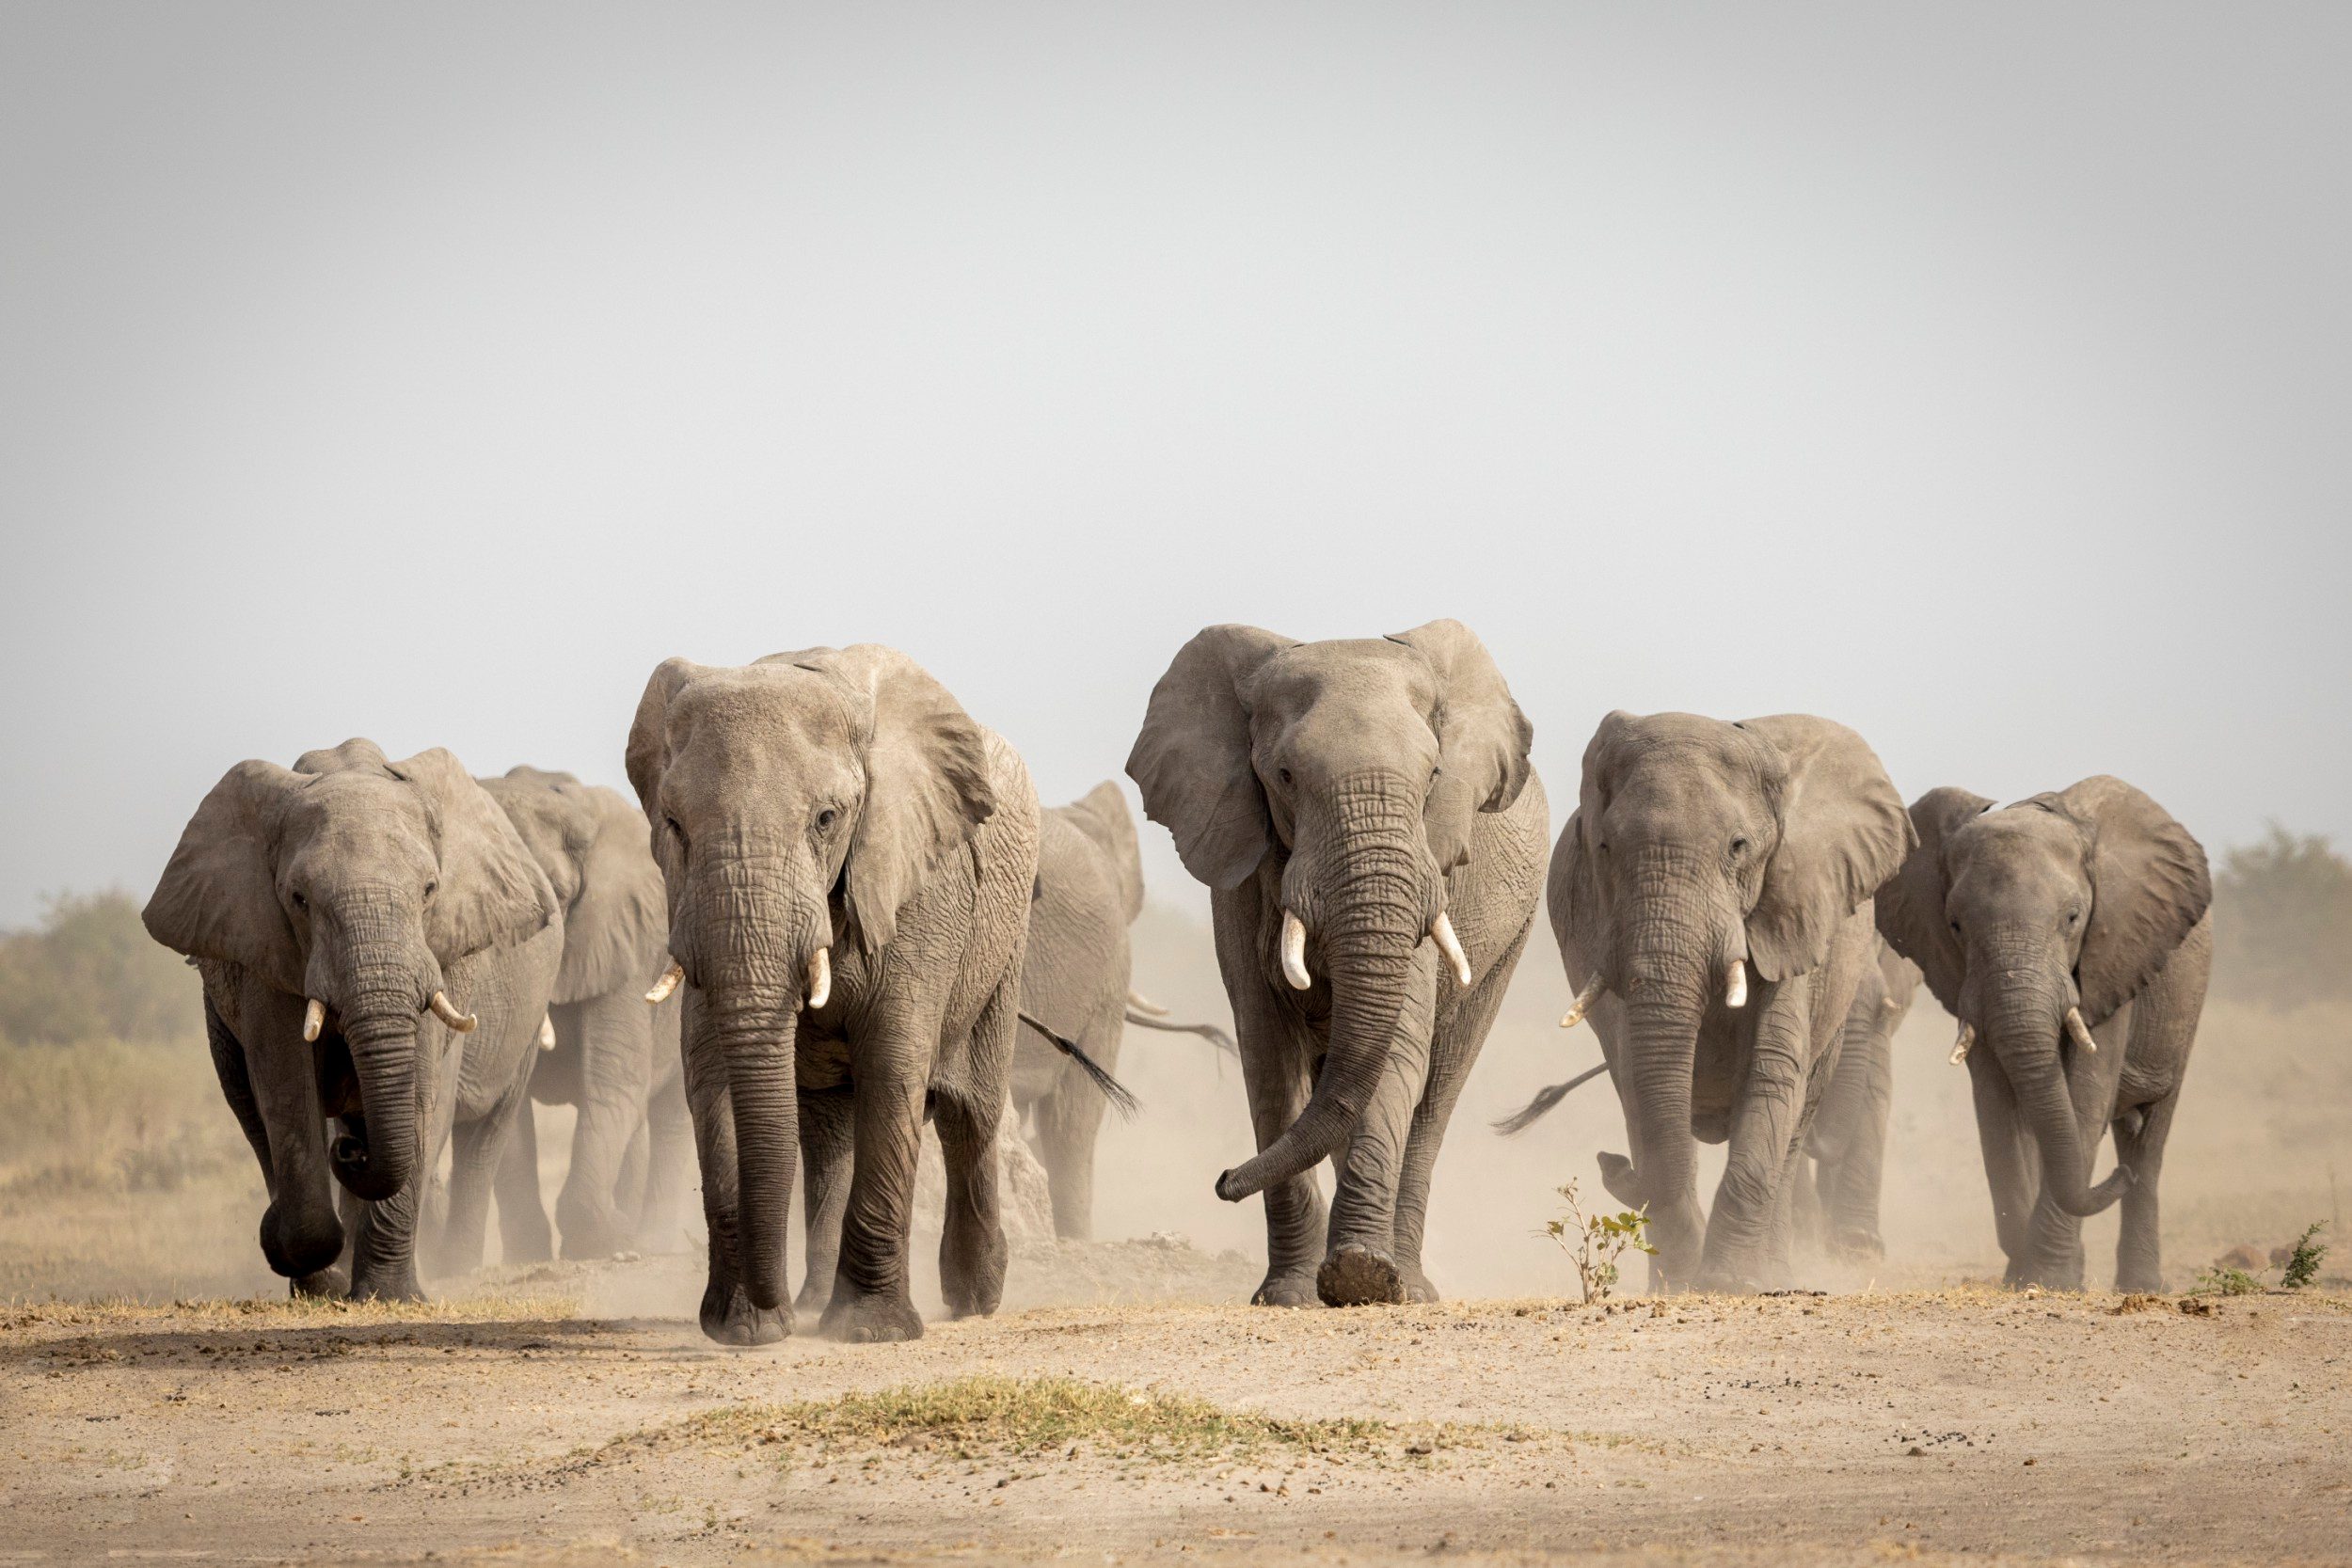 scores of elephants killed in botswana amid poaching surge